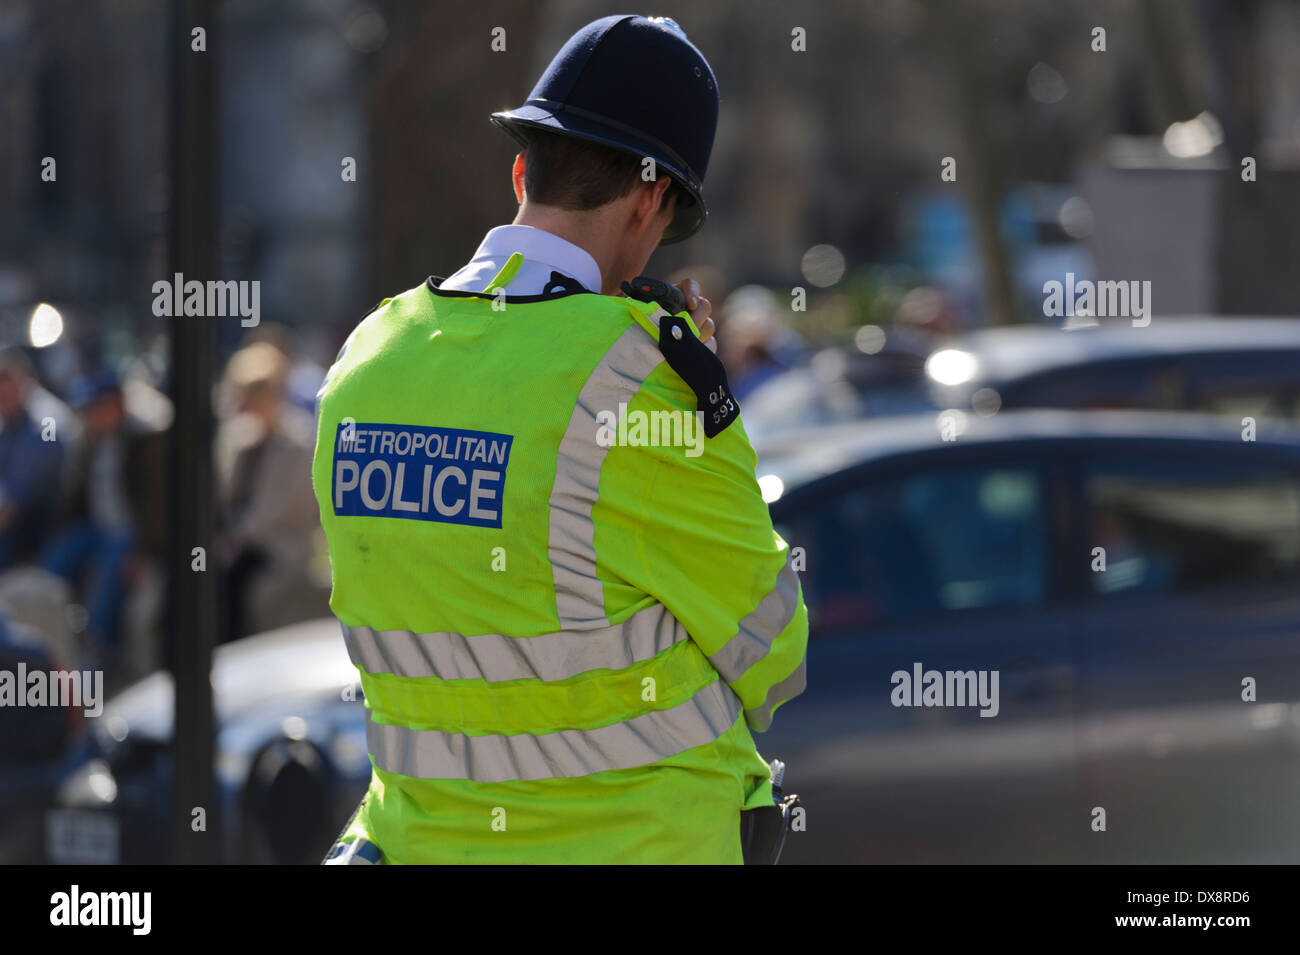 Retour de l'agent de police avec la Police métropolitaine sur une veste jaune, Londres, Angleterre, Royaume-Uni. Banque D'Images